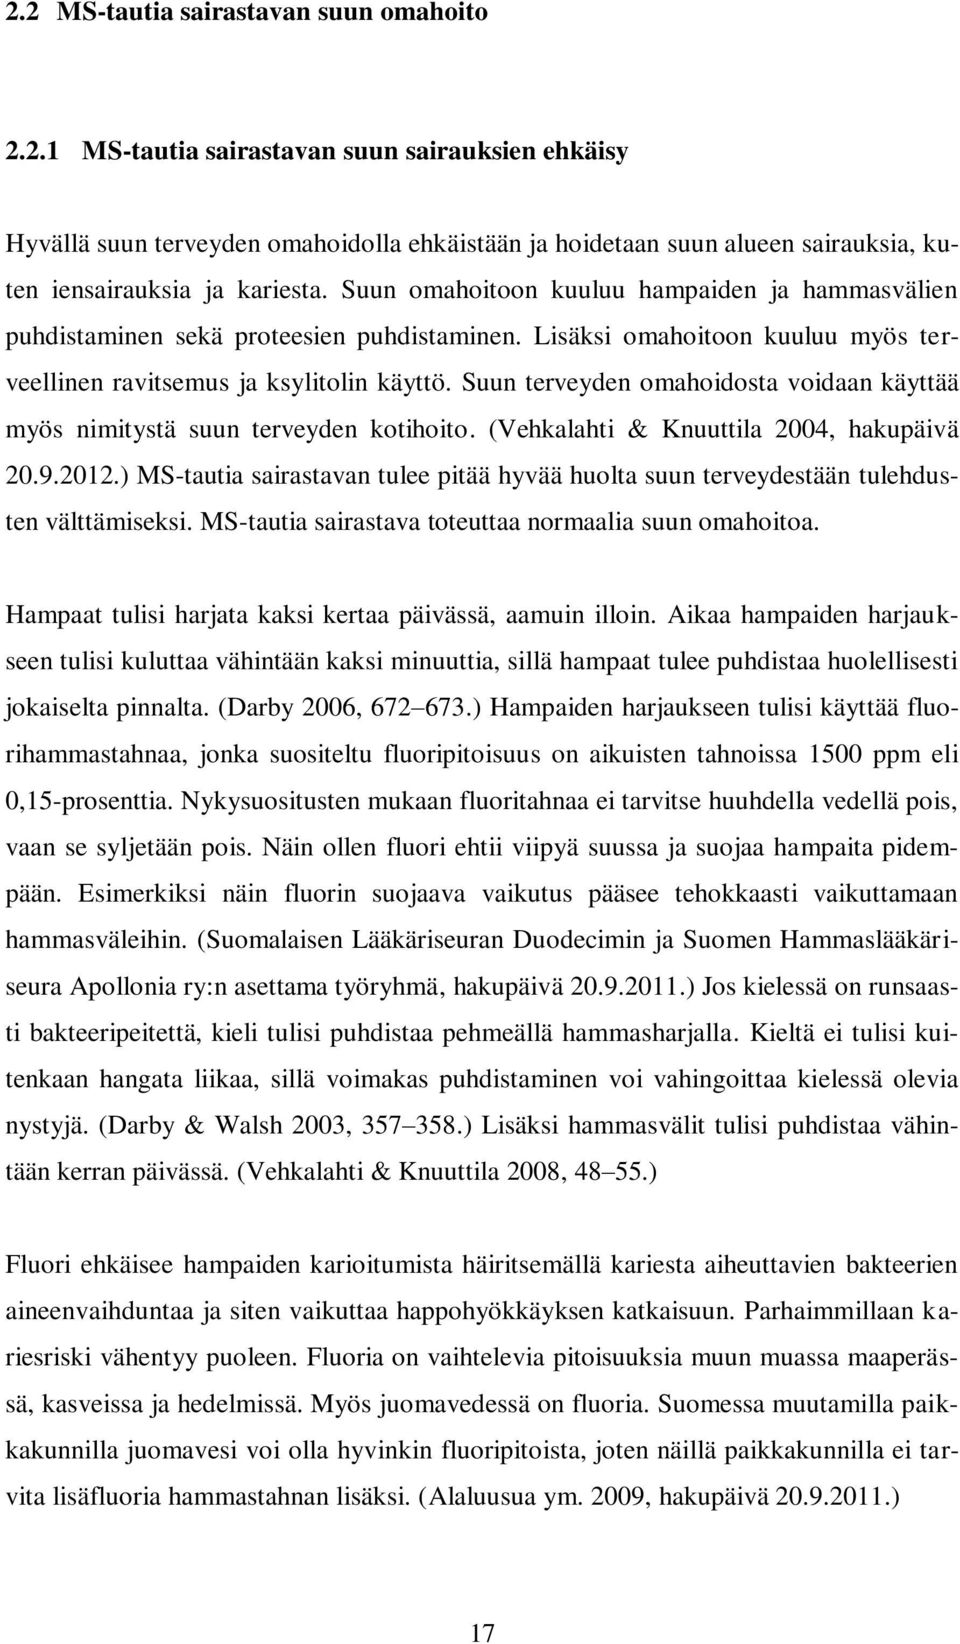 Suun terveyden omahoidosta voidaan käyttää myös nimitystä suun terveyden kotihoito. (Vehkalahti & Knuuttila 2004, hakupäivä 20.9.2012.